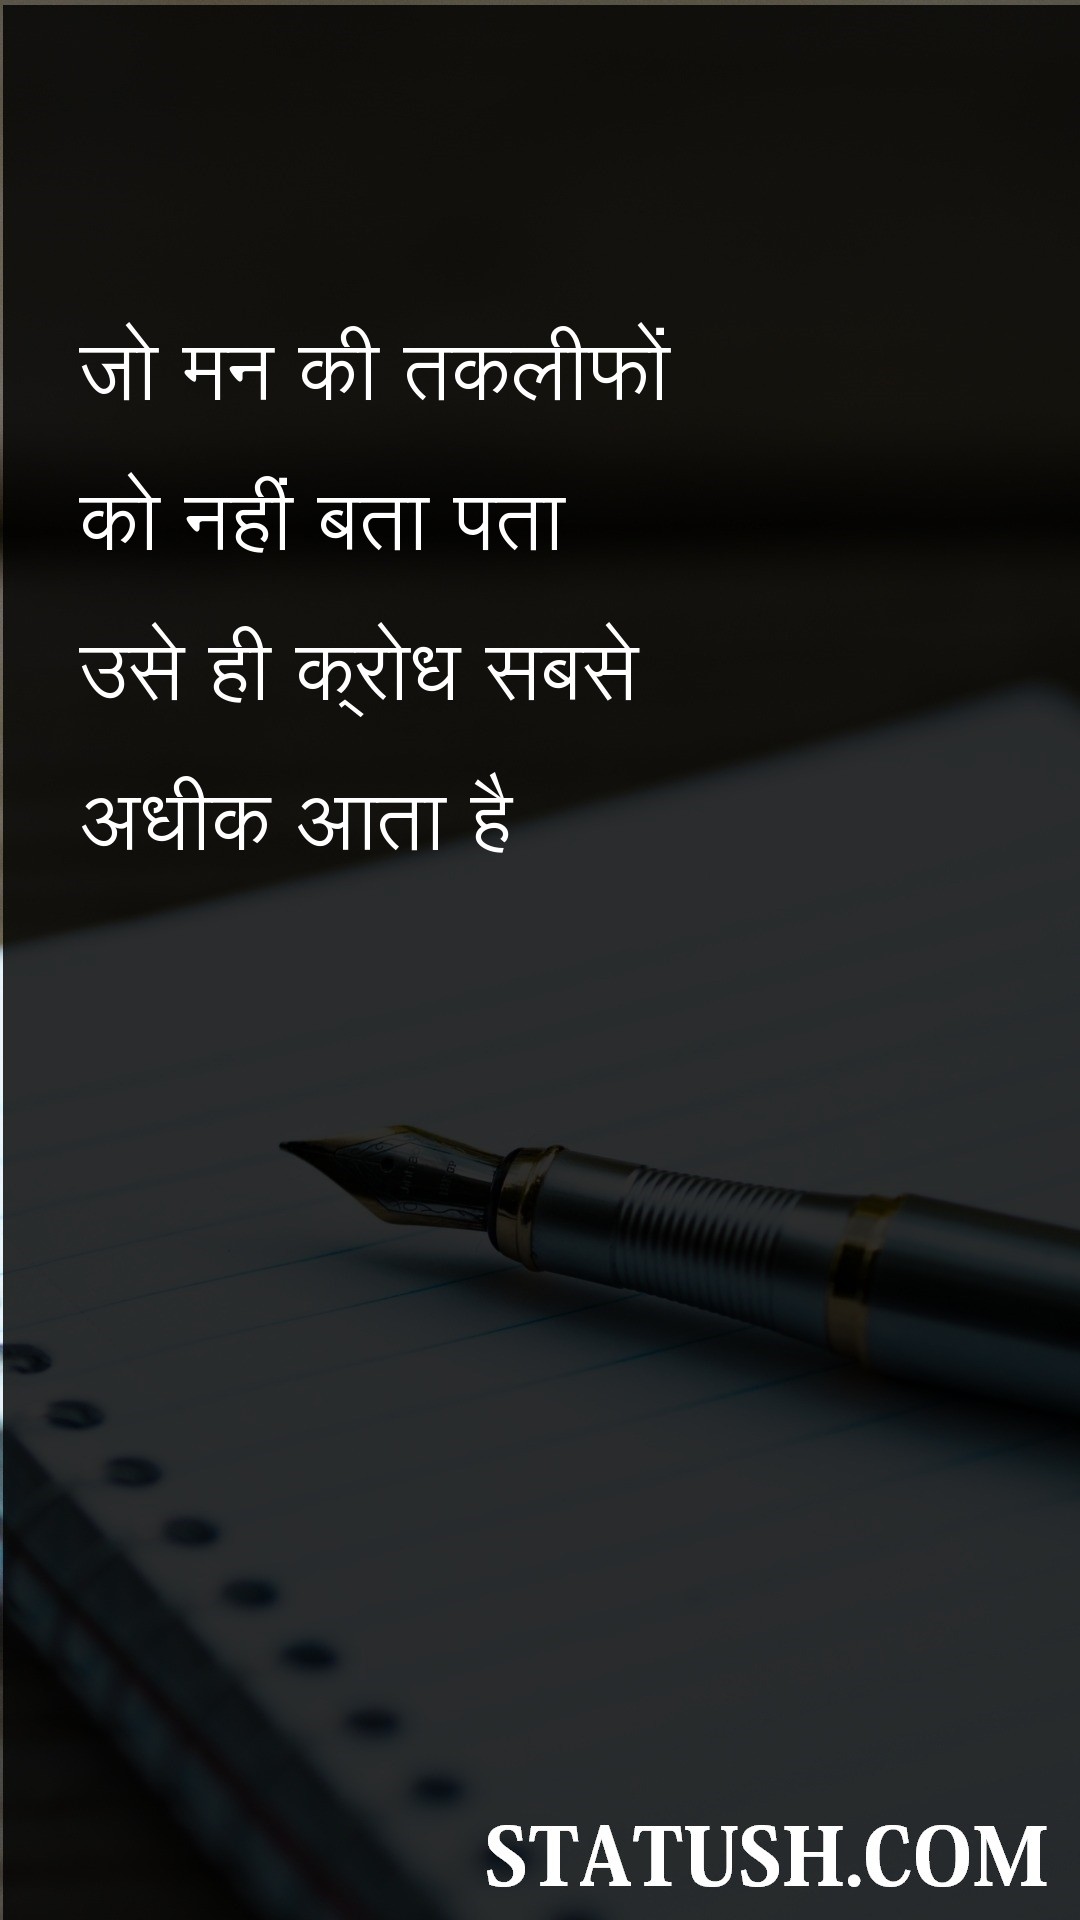 anger comes the most - Hindi Quotes at statush.com